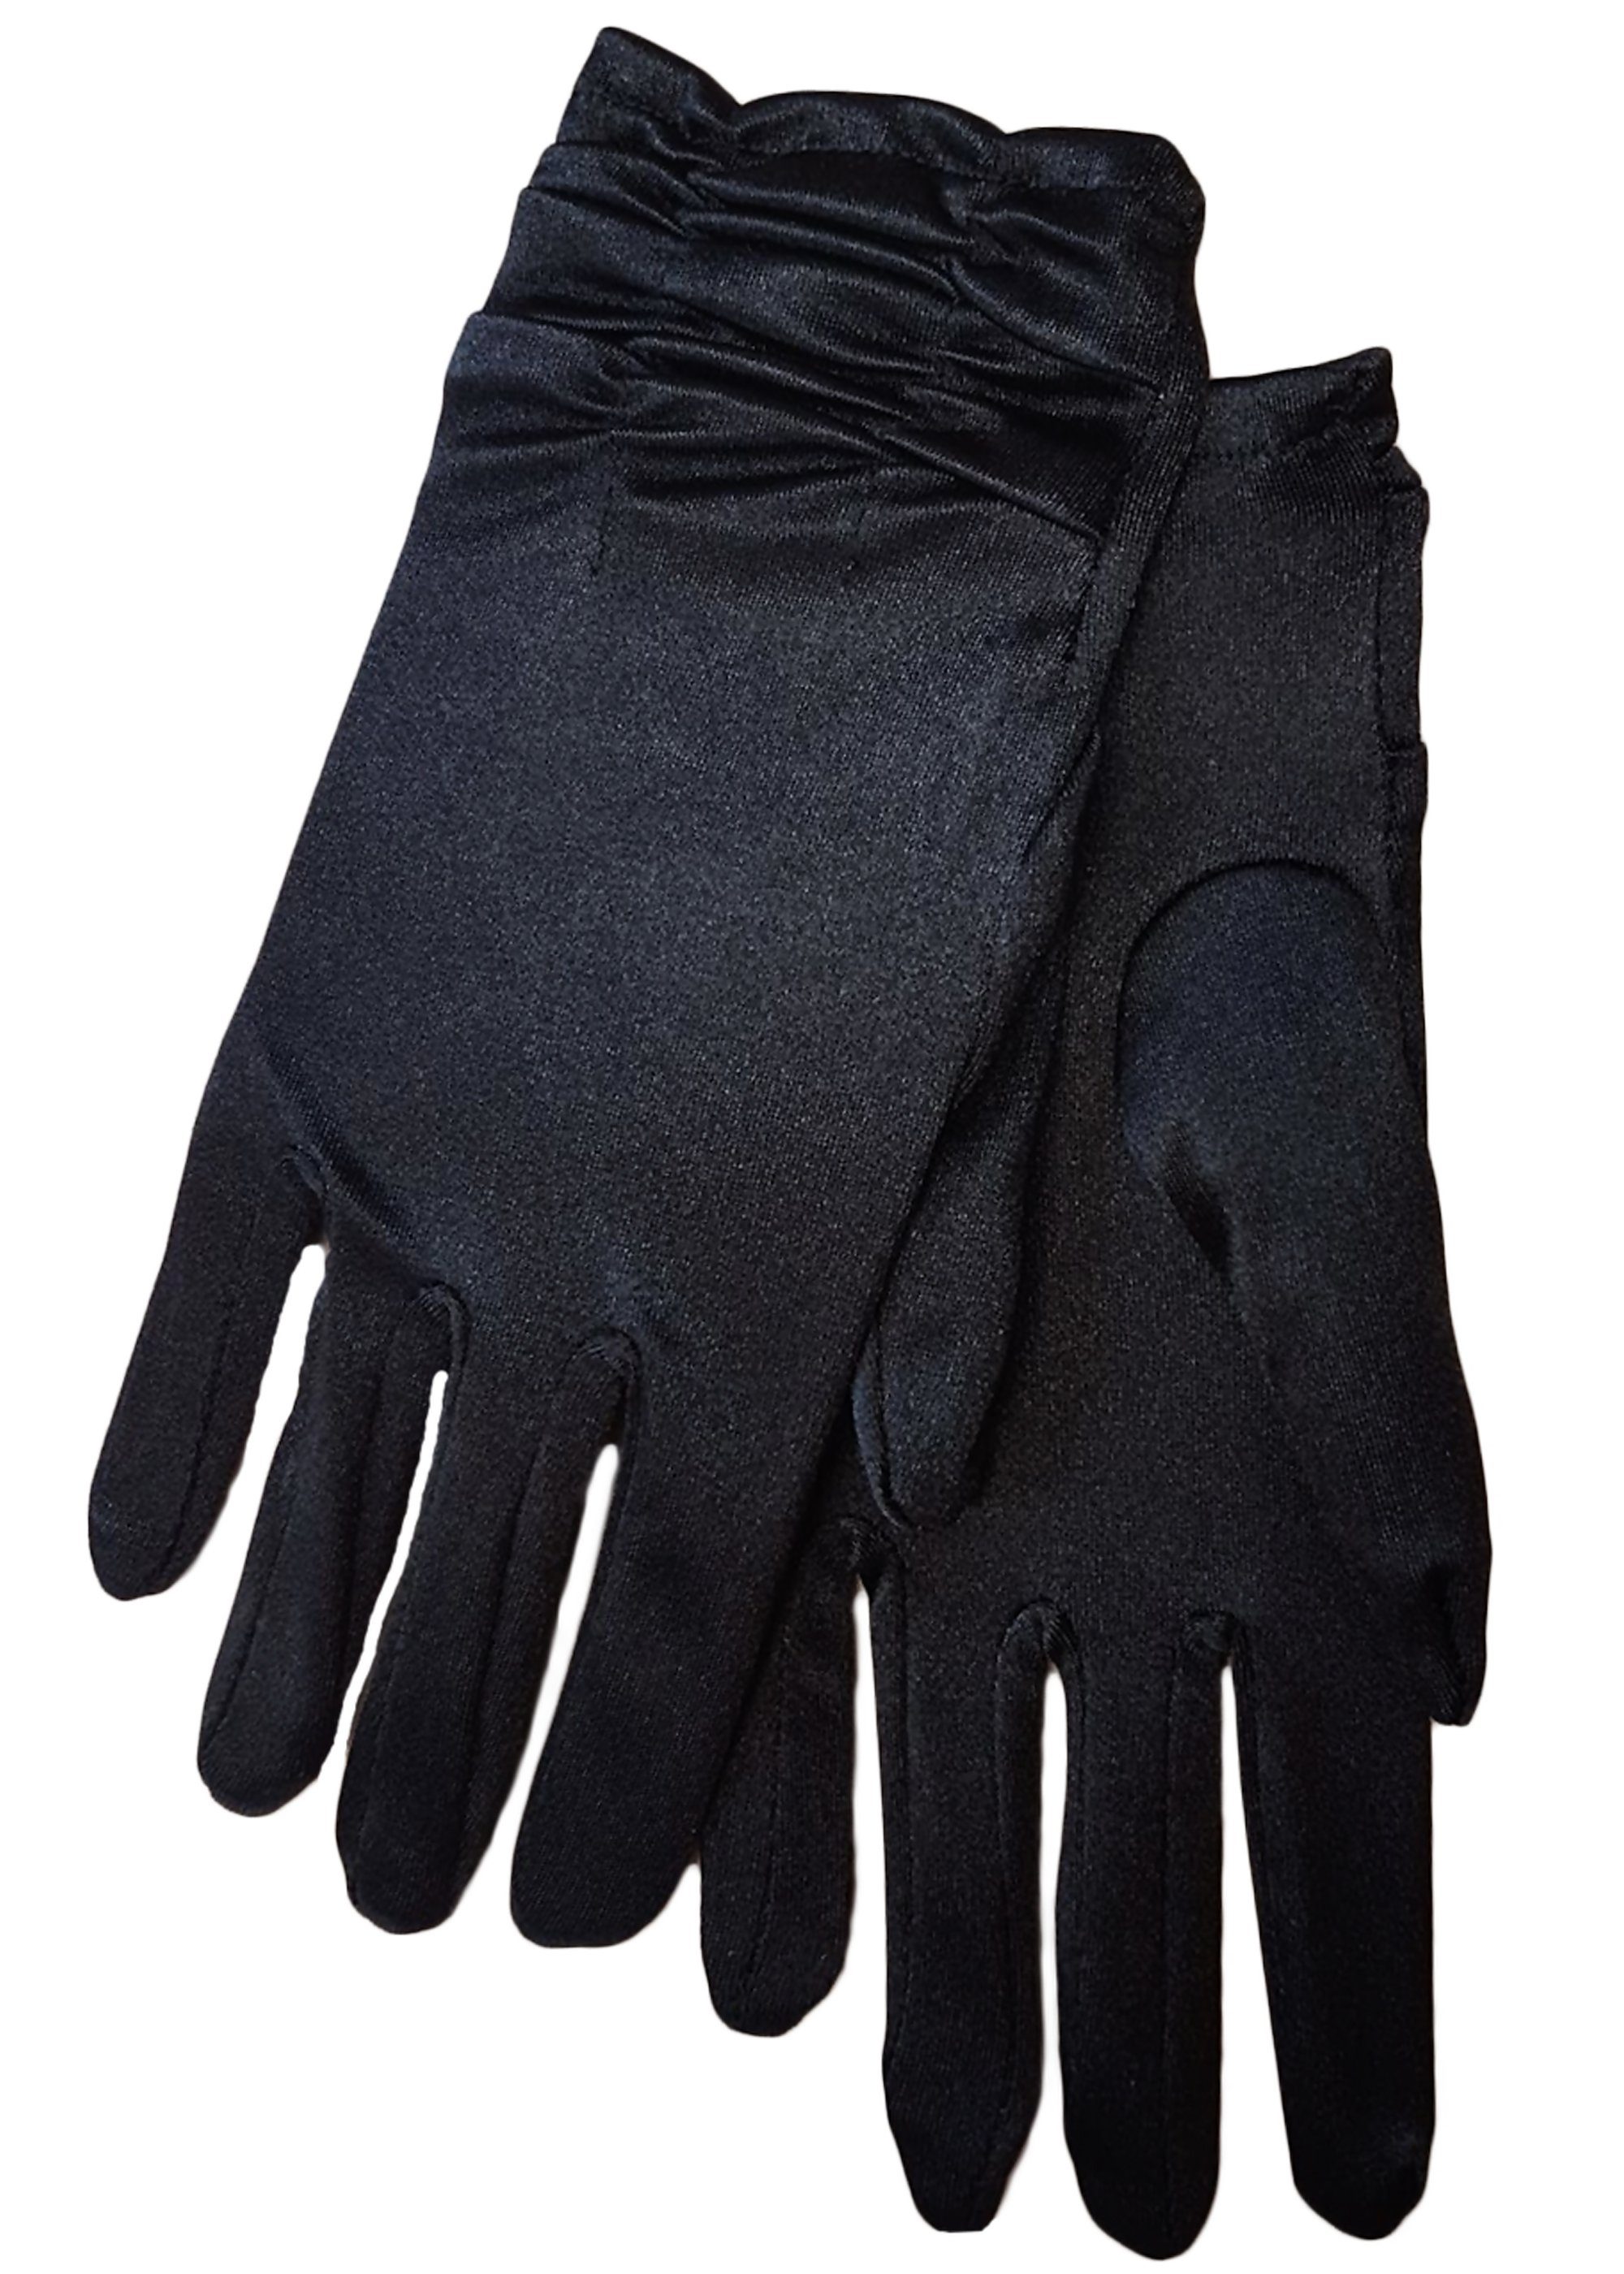 Family Trends Abendhandschuhe Satin-Look Handschuhe im kurz Damen dehnbar schwarz Raffung Satin mit